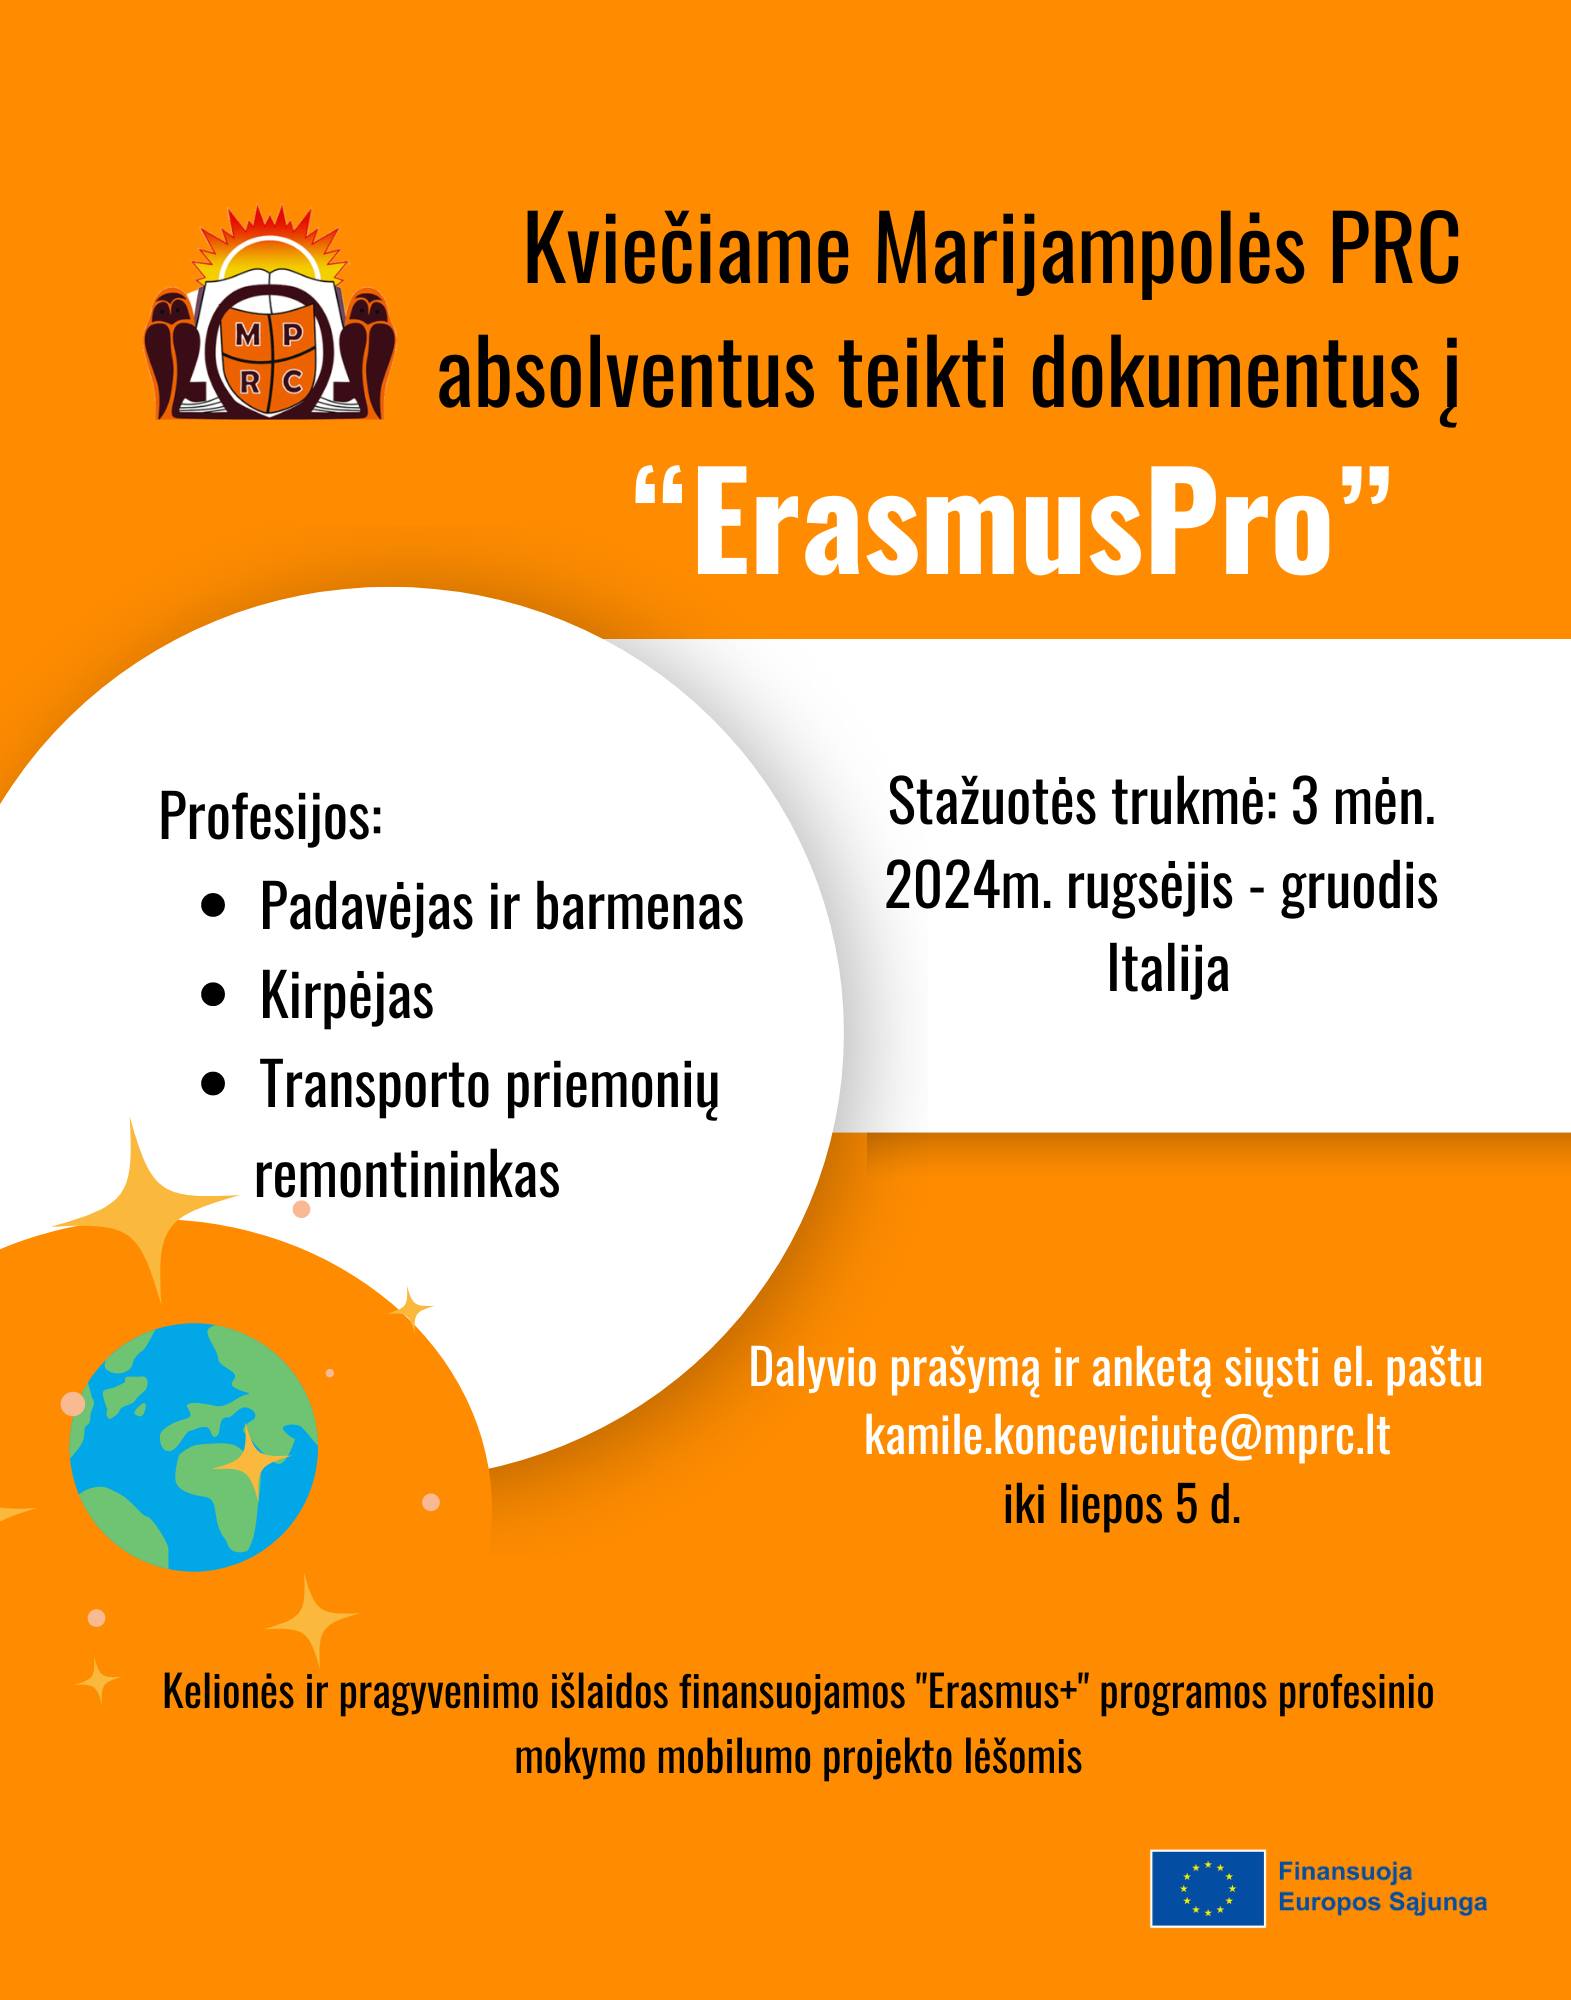 Kviečiama pasinaudoti „Erasmus+“ programa